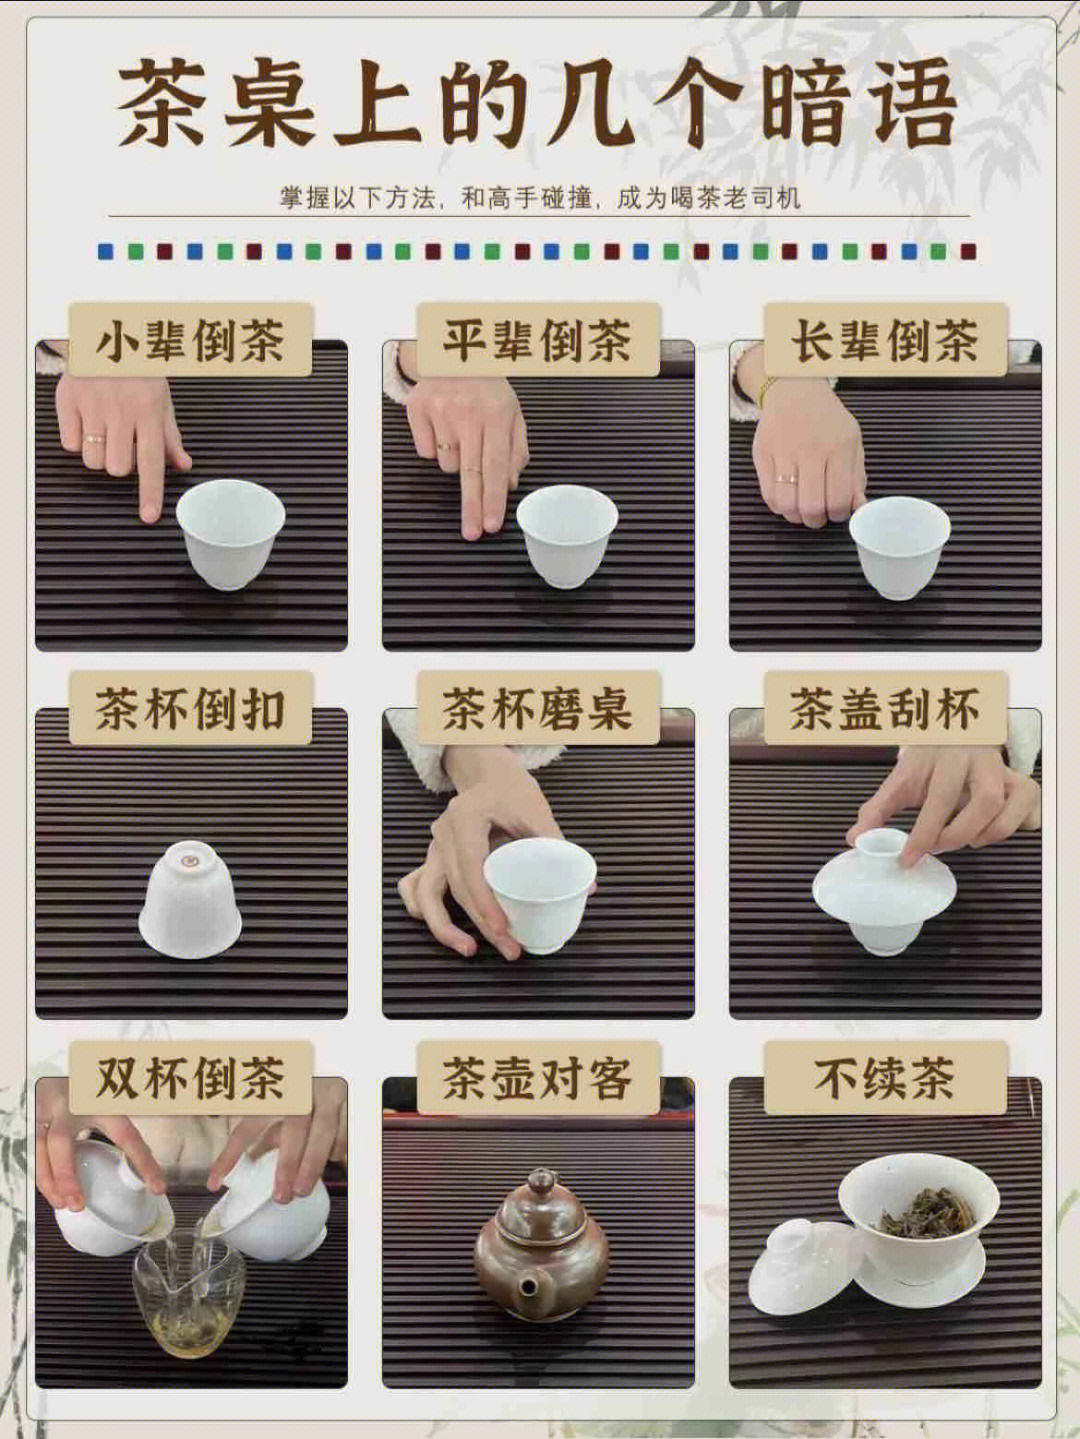 倒茶感谢的手势图片